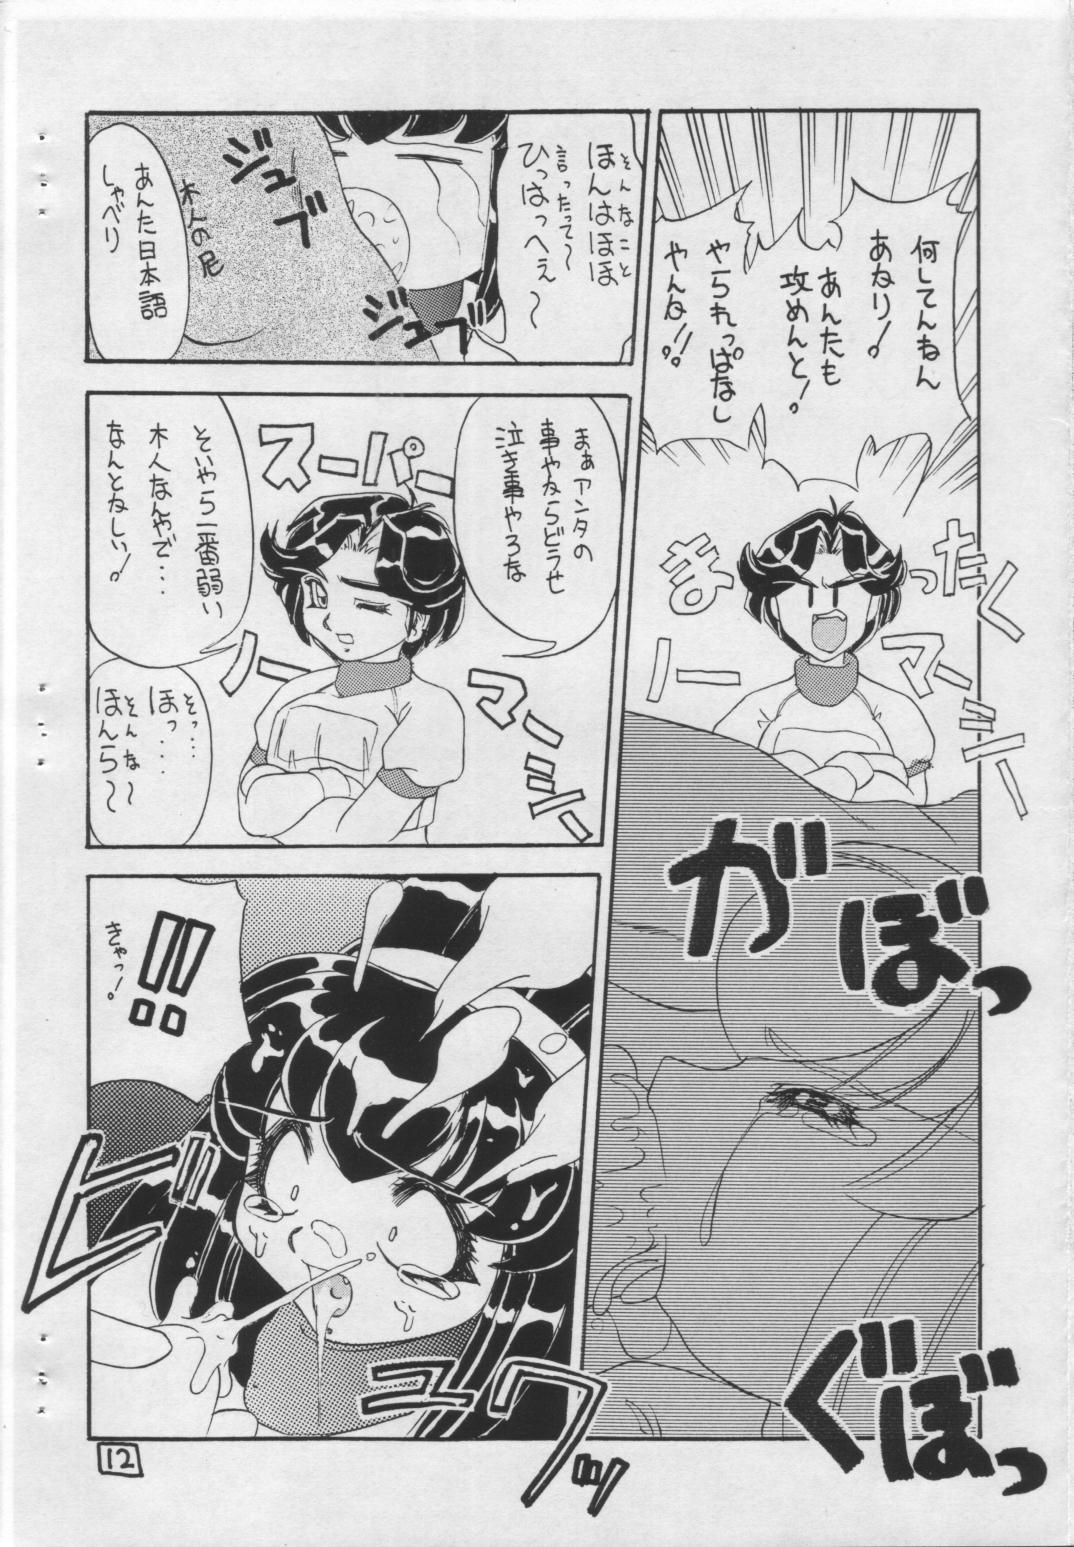 Cums Soko ni Ai wa Aru no?! Vol.I DAIDOKAI - Battle athletes Price - Page 11